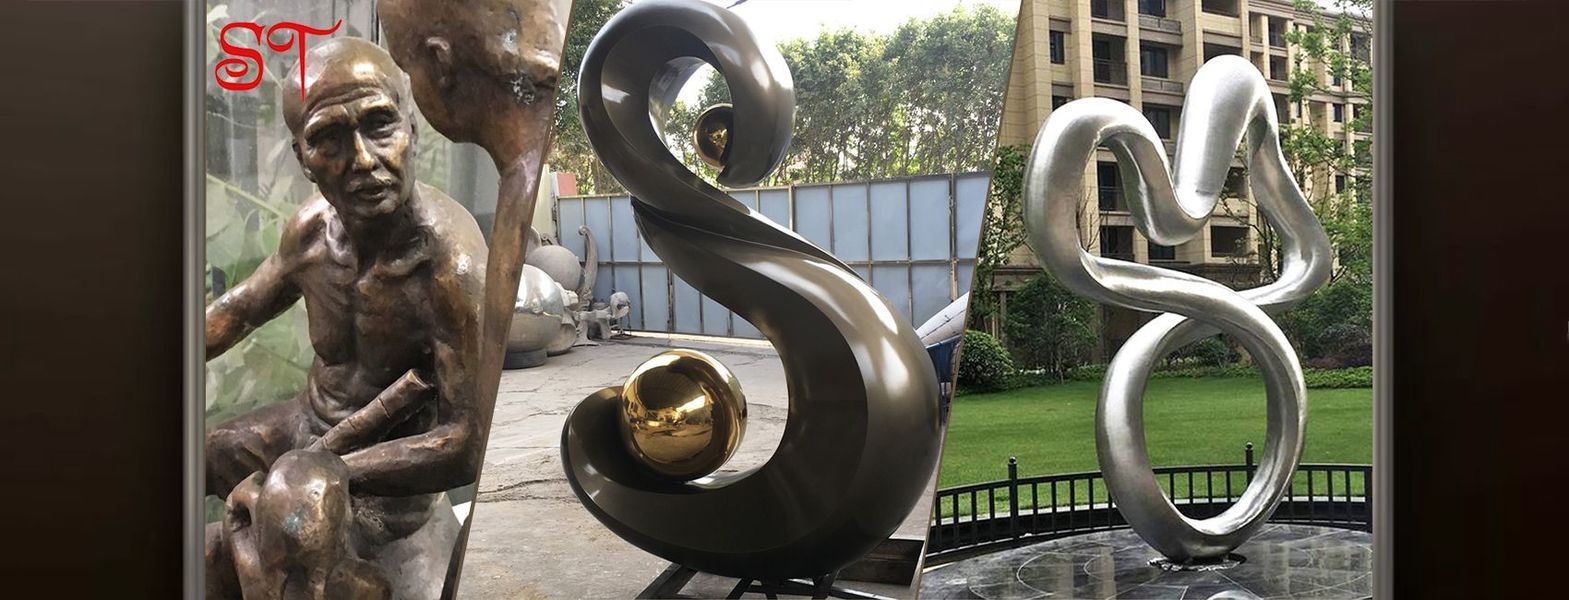 چین بهترین مجسمه های هنری فلزی برای فروش